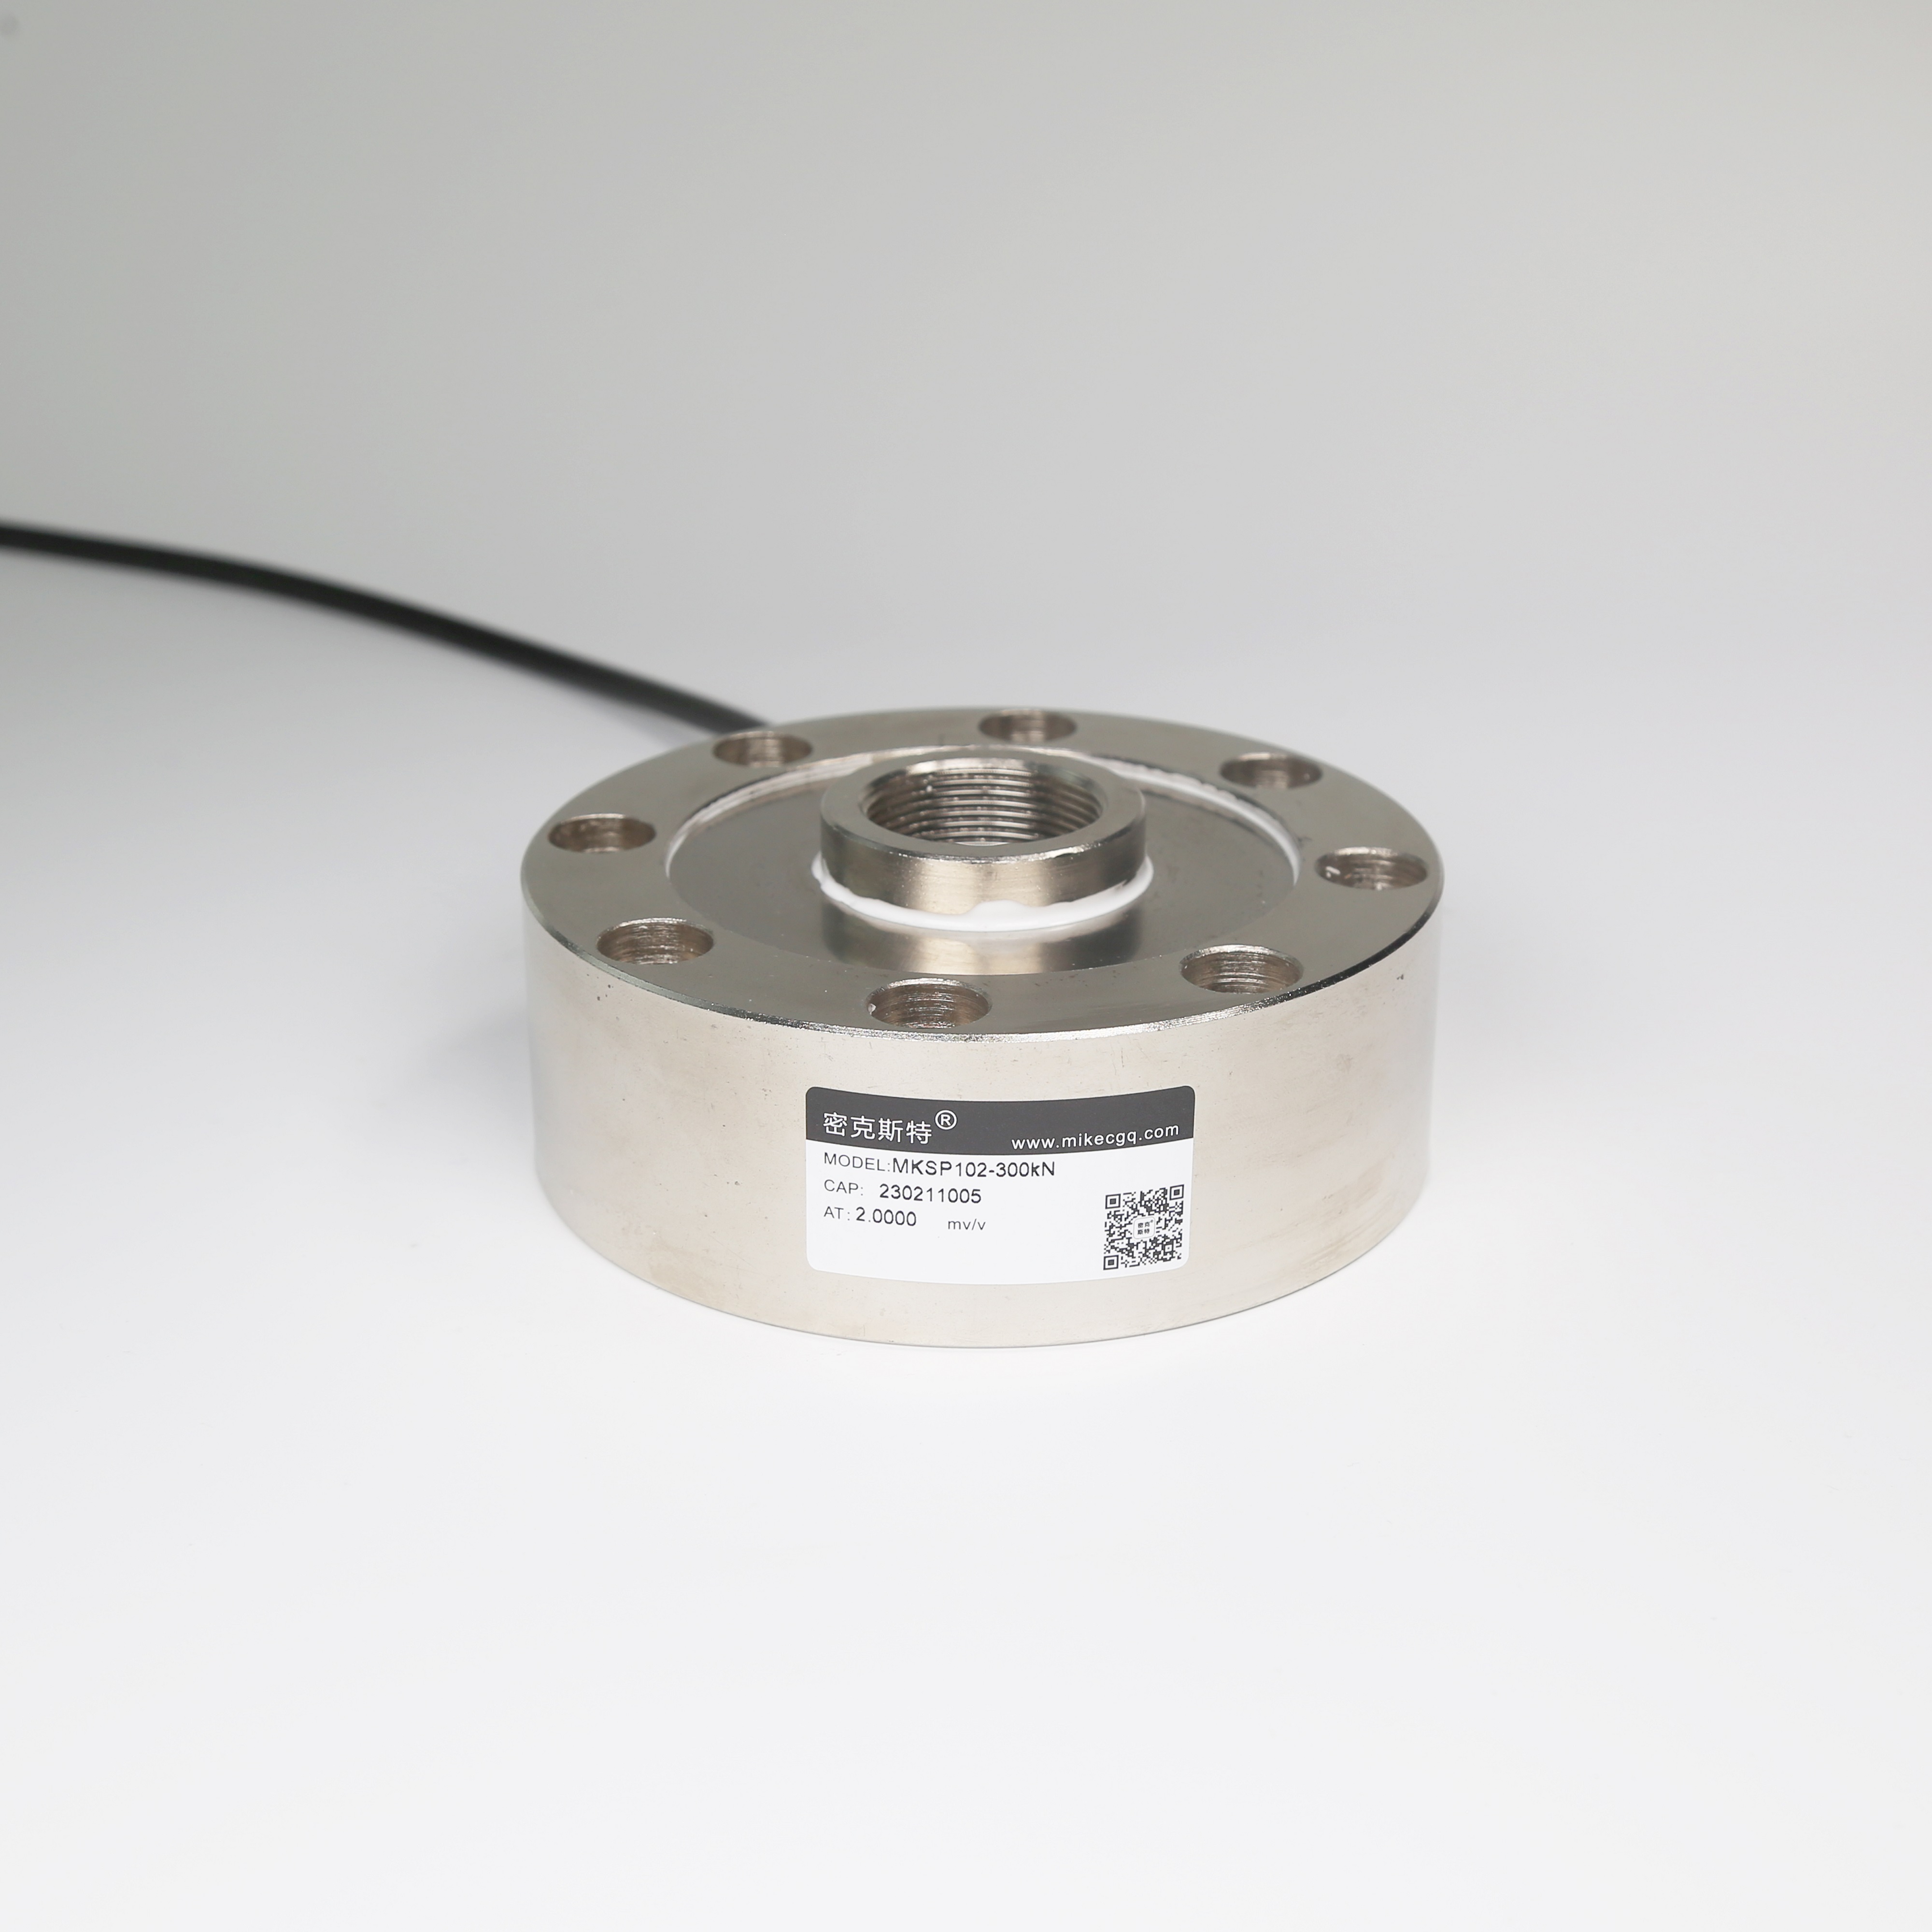 MKSP102-300kN 轮辐式传感器